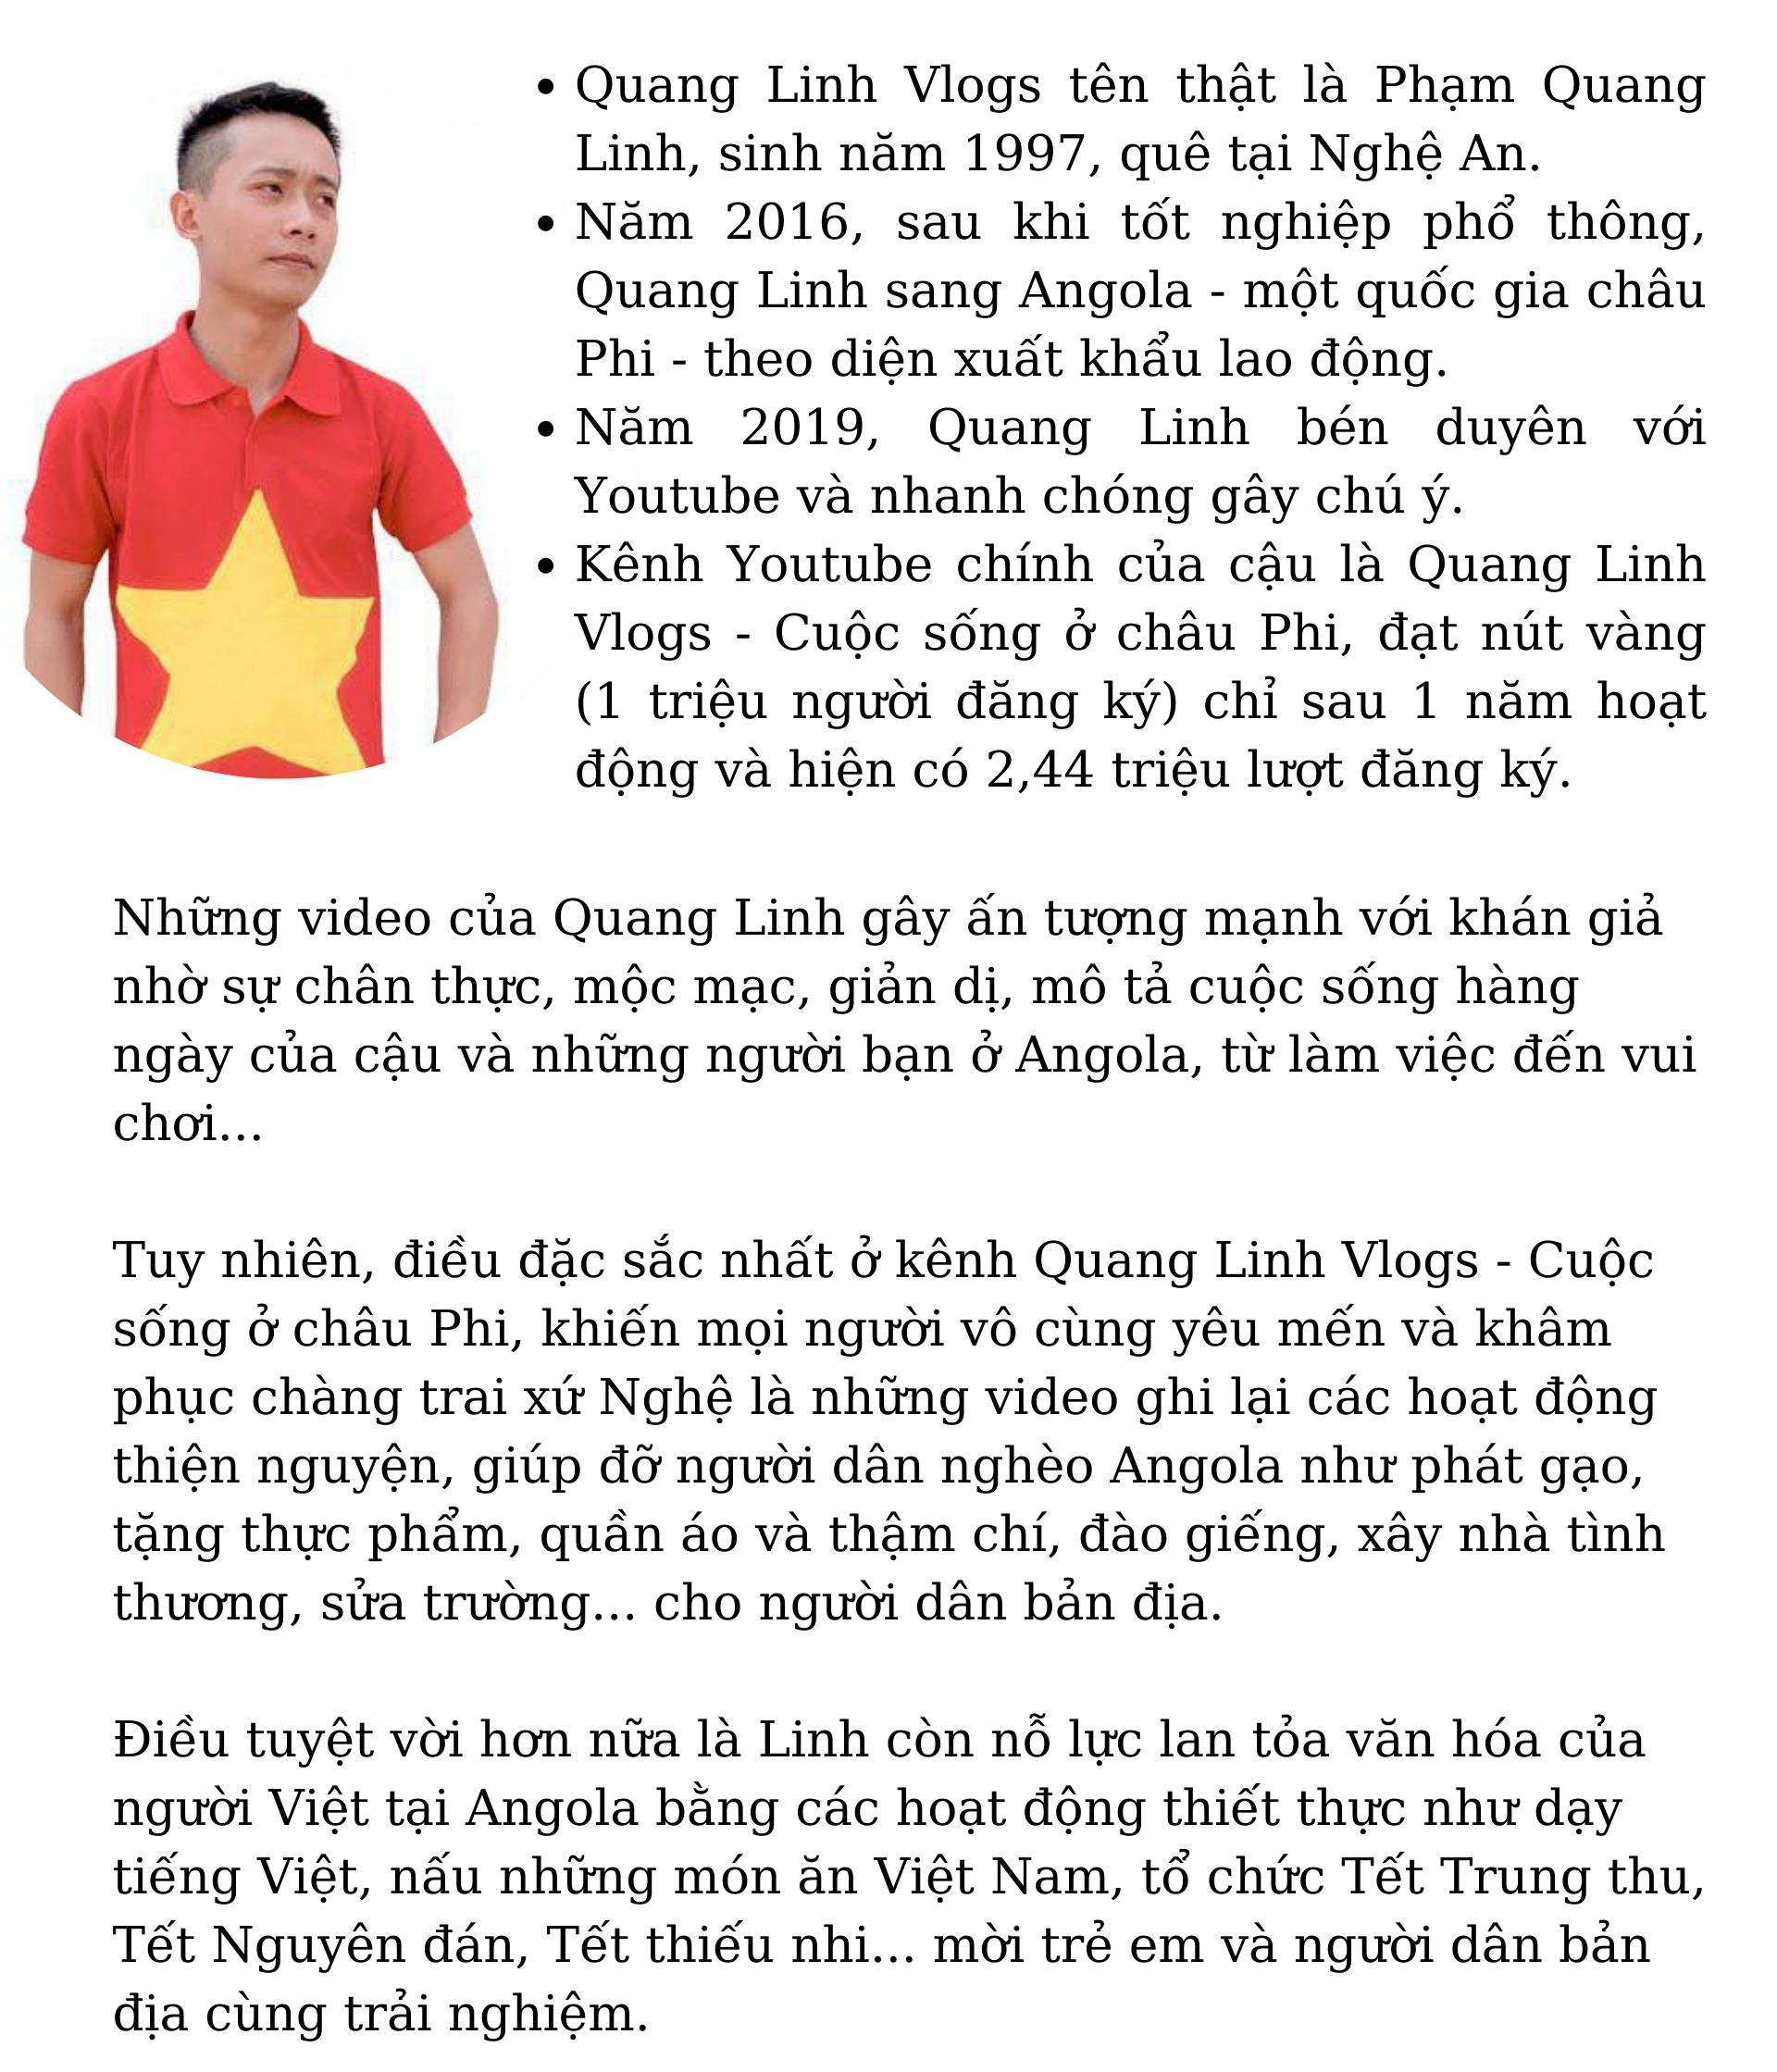 Quang Linh Vlogs: Quang Linh Vlogs là kênh YouTube tuyệt vời dành cho những ai yêu thích du lịch và ẩm thực. Với những video chất lượng và đầy sáng tạo, Quang Linh đã thu hút lượng fan đông đảo. Hãy đón xem để khám phá những điểm đến tuyệt đẹp và món ăn ngon của Việt Nam và thế giới.